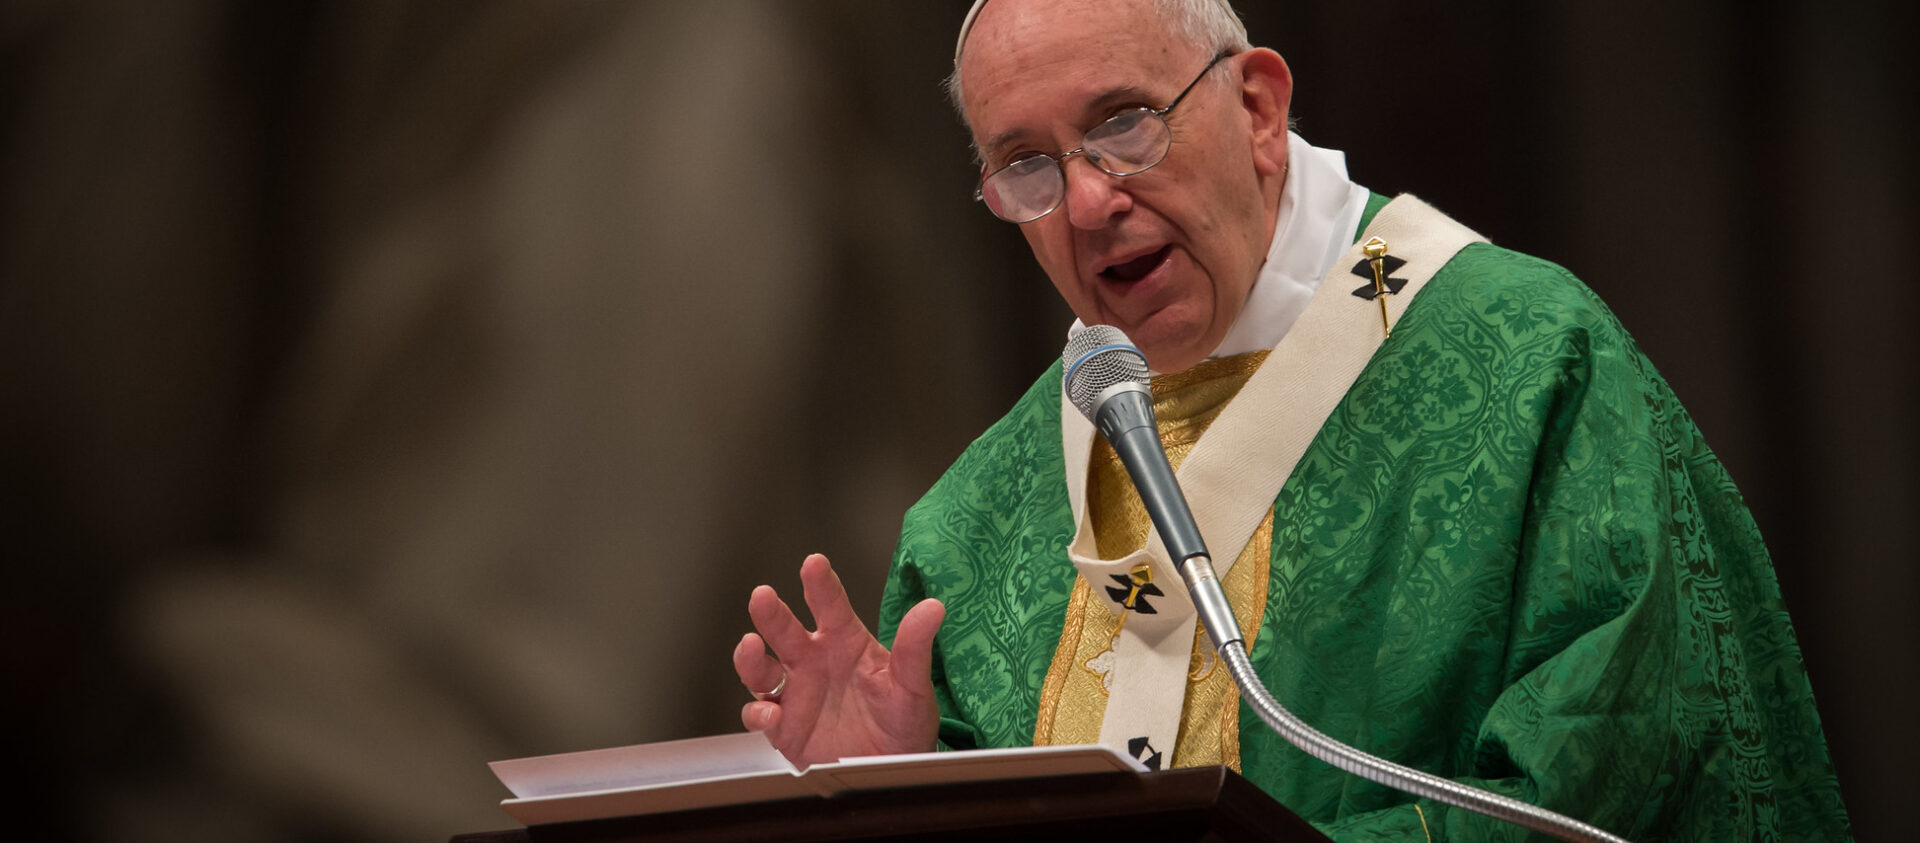 Le pape François a regretté les "luttes de pouvoir" dans certaines communautés | © Mazur/catholicnews.org.uk